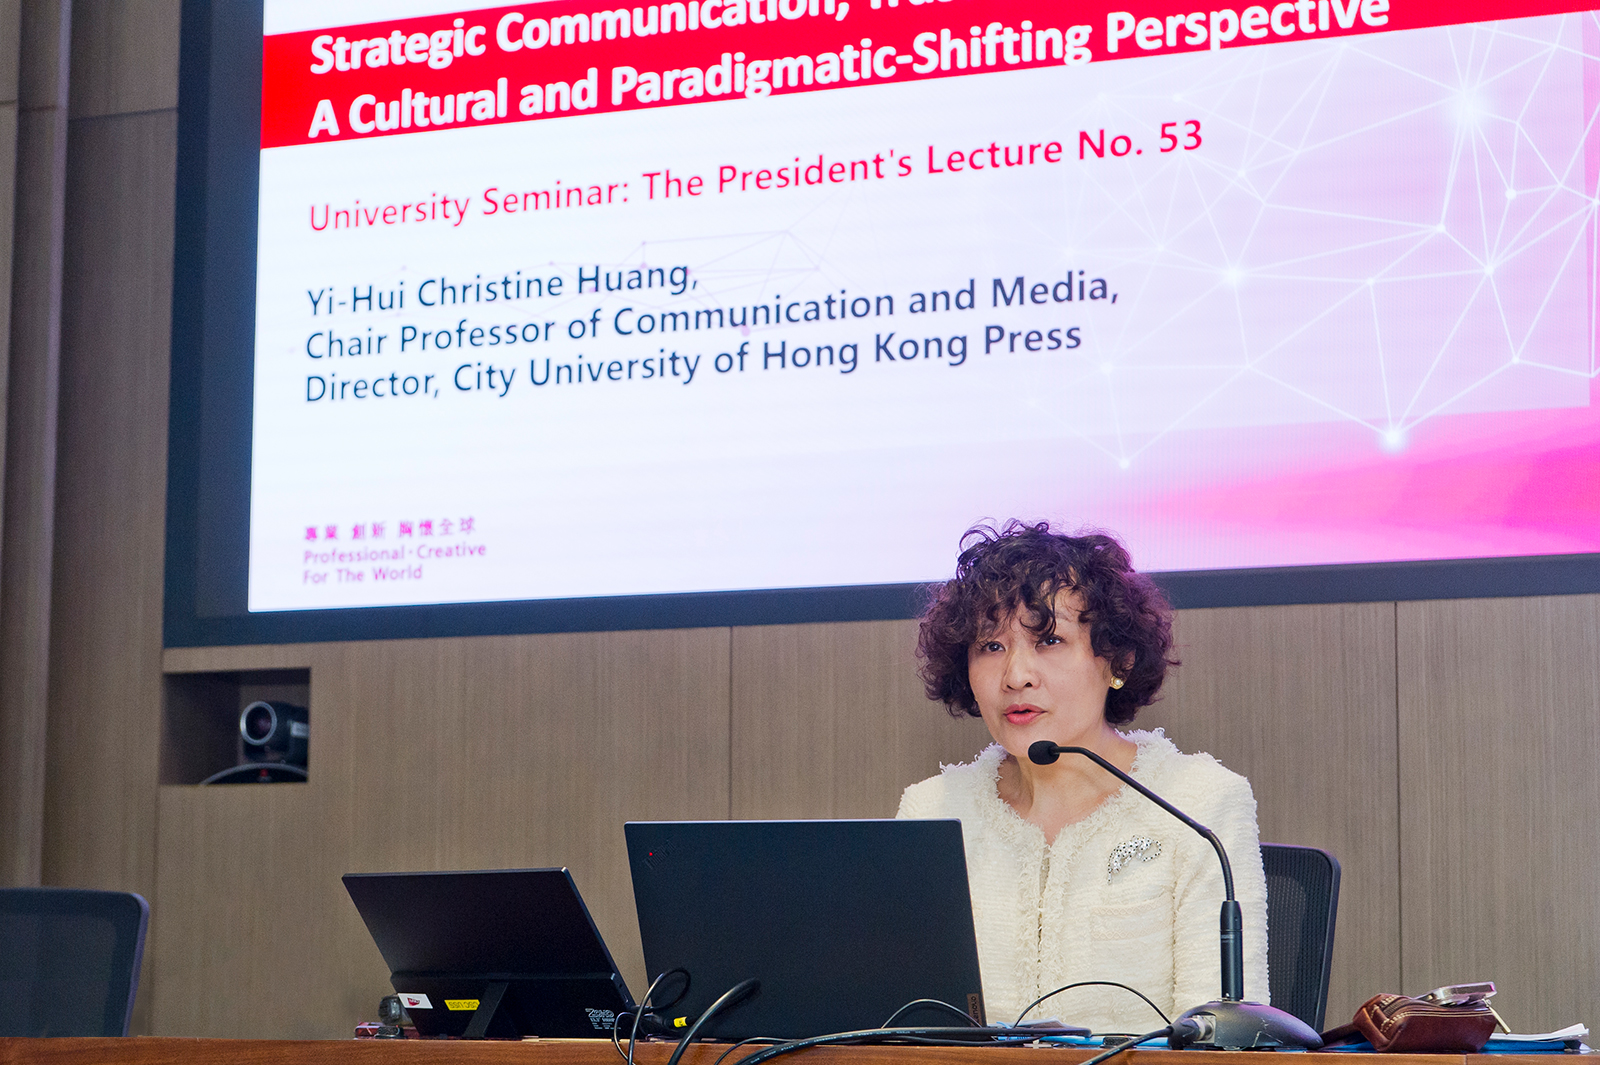 Professor Christine Huang Yi-hui